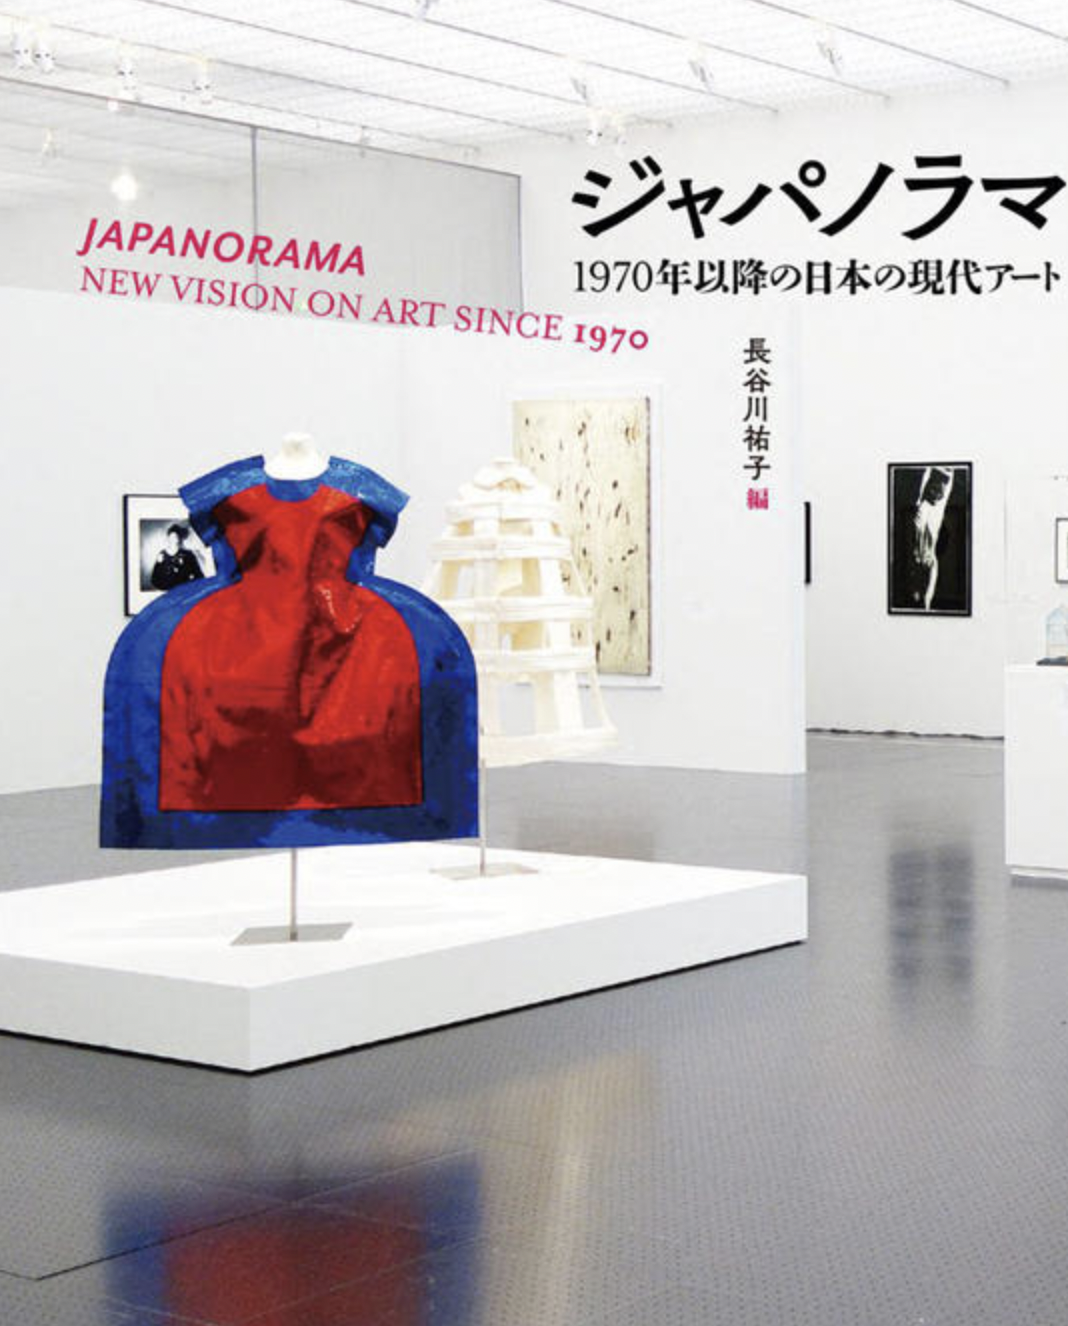 Celebrating The Publication Of “Japanorama” (Suiseisha): Talk Event By Yuko Hasegawa, Yasuo Kobayashi And Futoshi Hoshino “Panorama Of Japanese Contemporary Art”